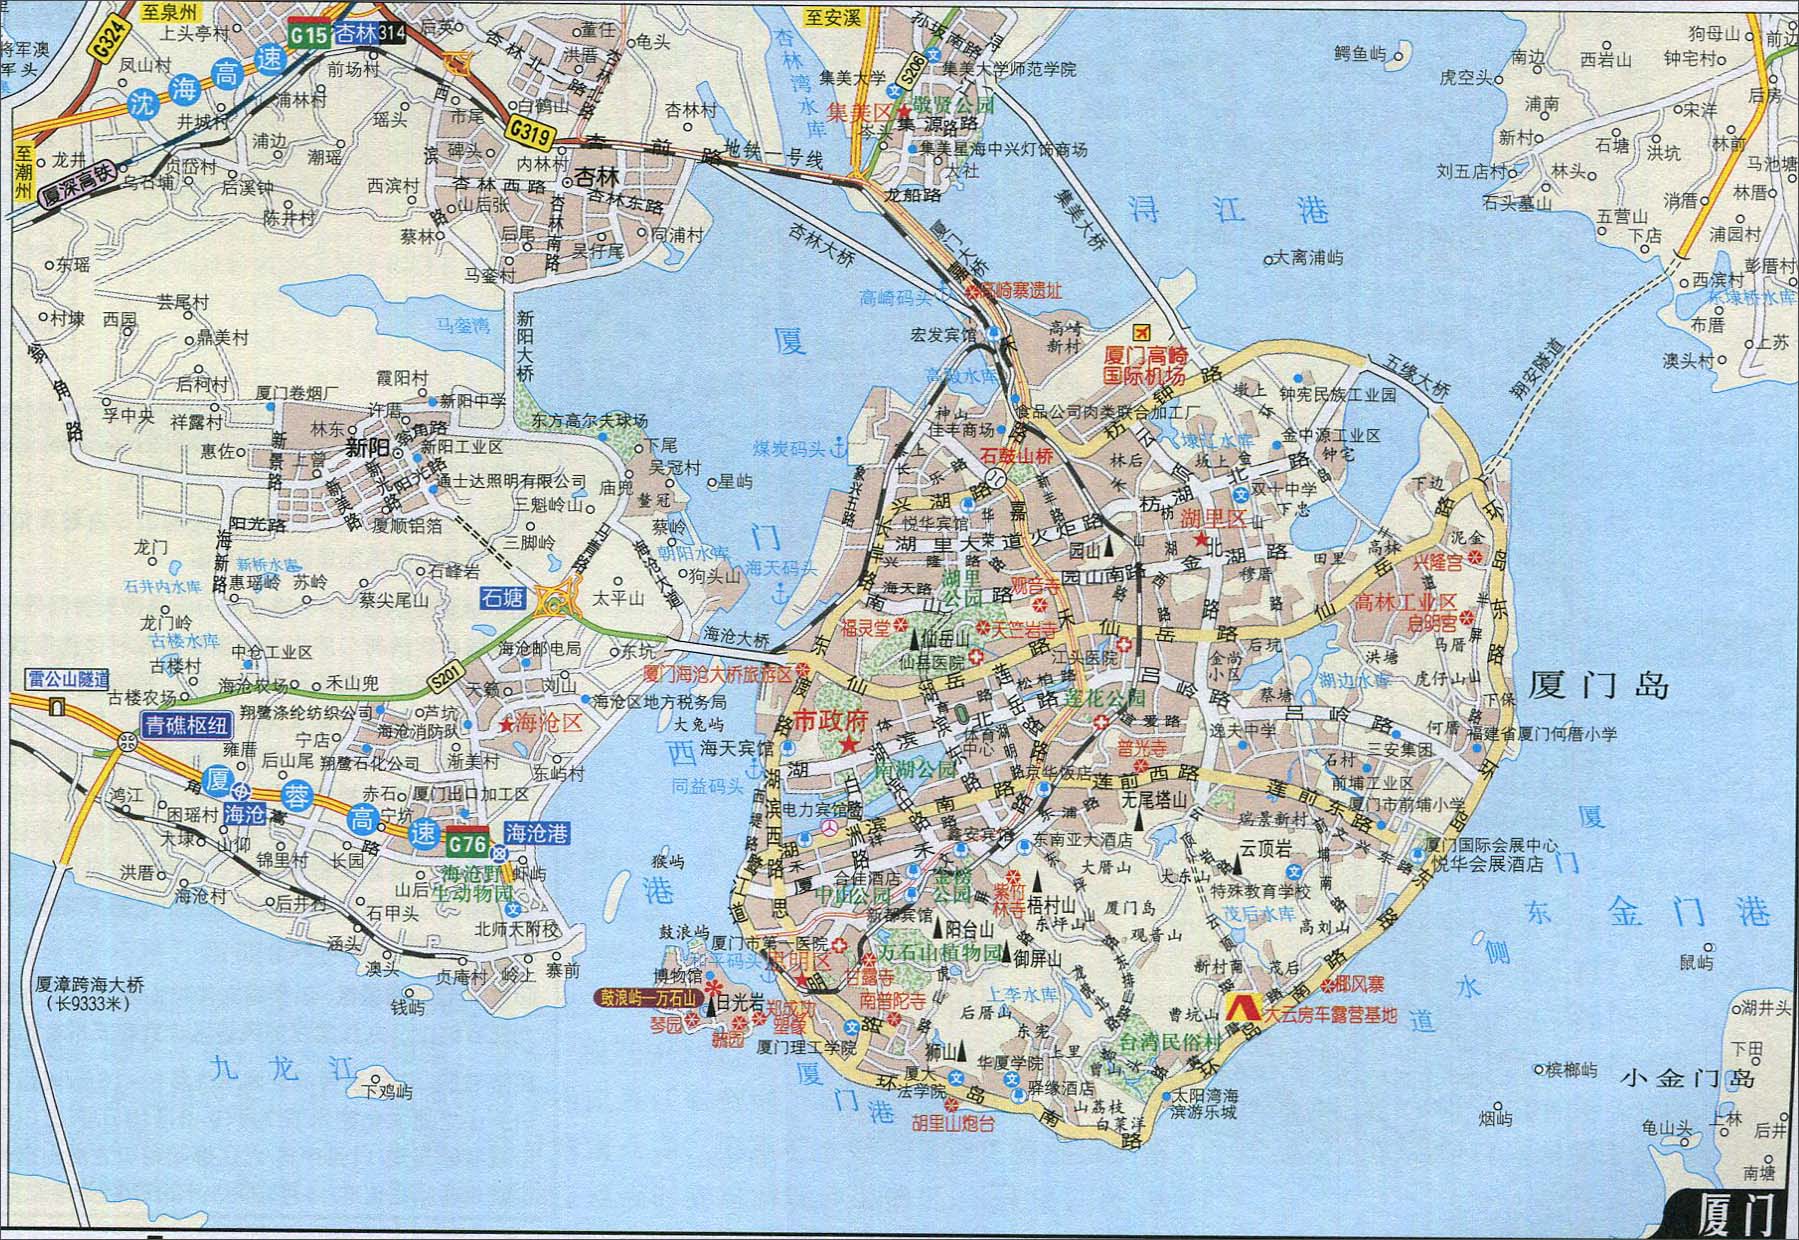 地图库 旅游地图 福建旅游 >> 厦门自驾游地图  景点导航:世界旅游图片